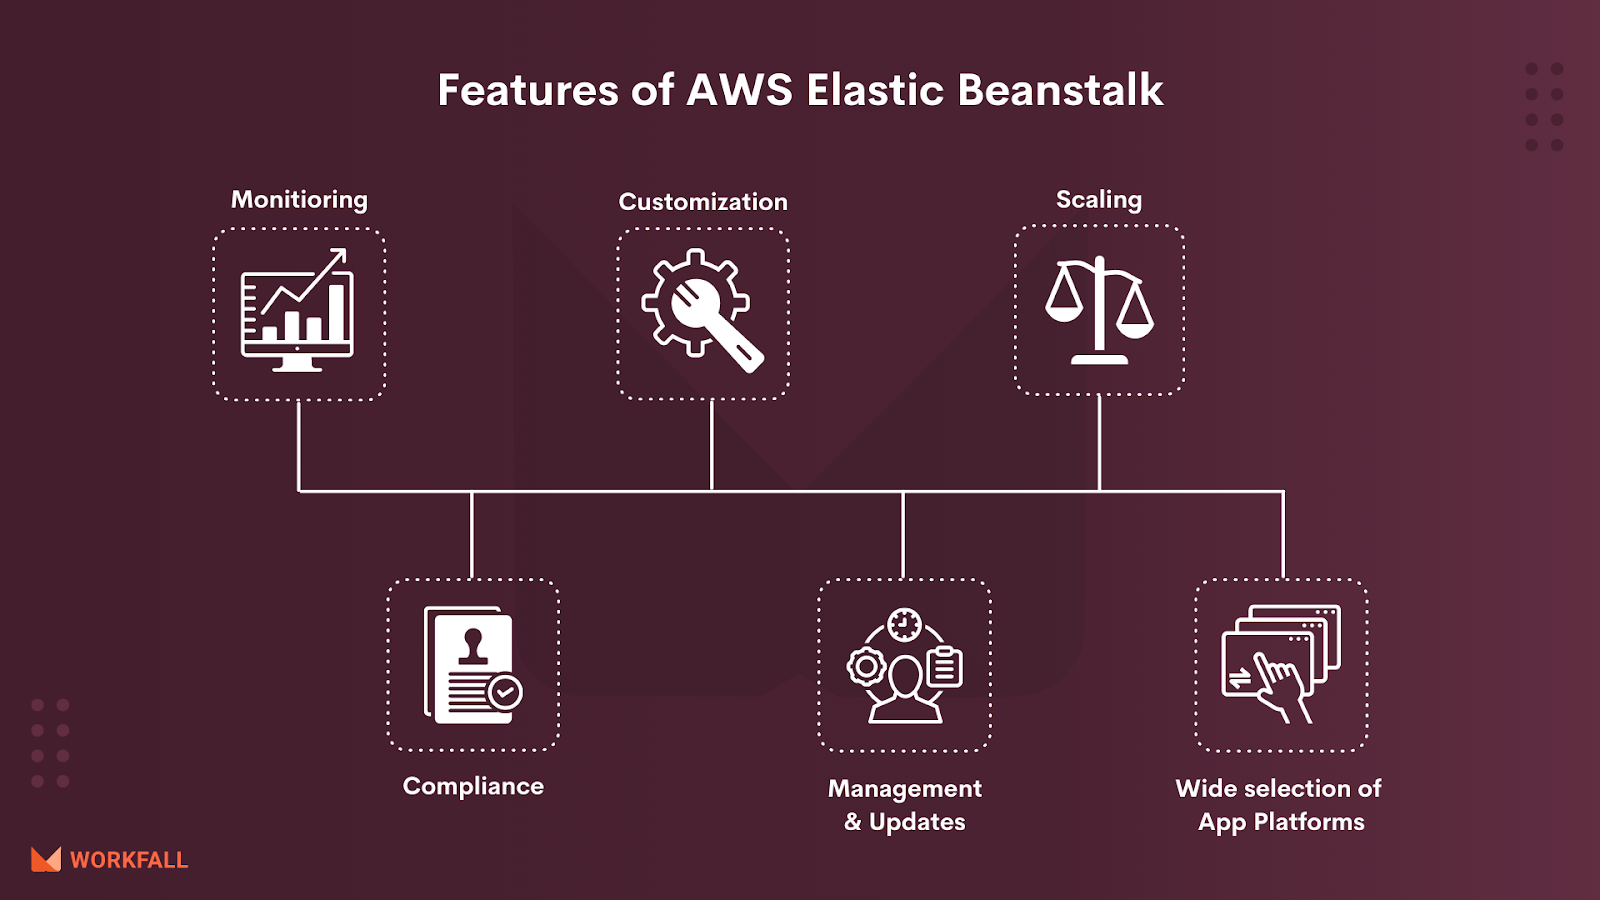 Features of AWS Elastic Beanstalk